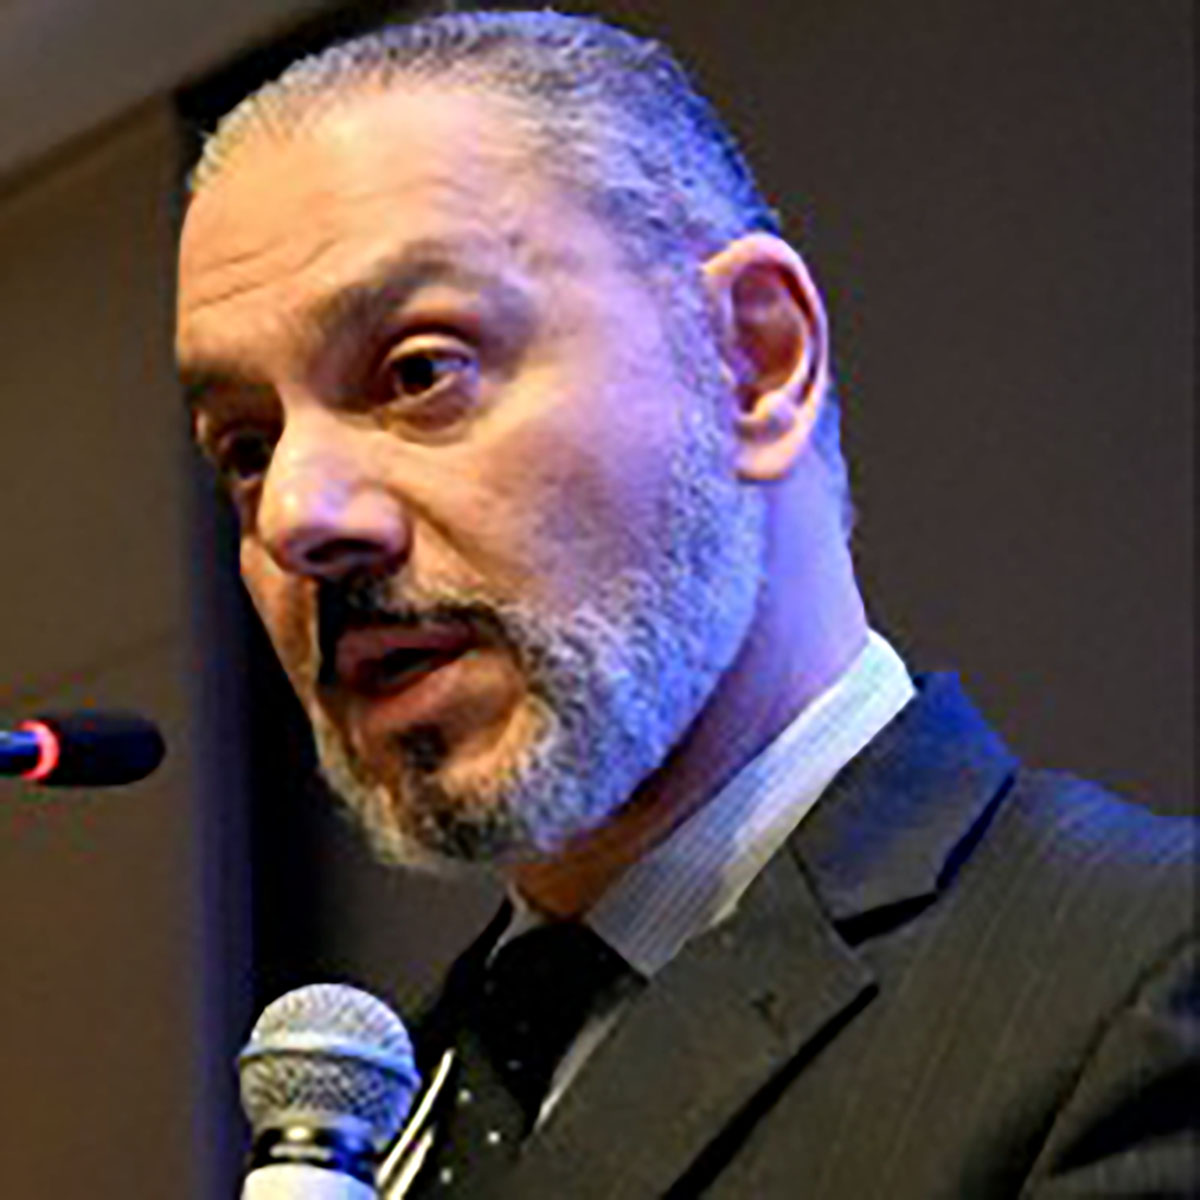 Dr. Ricardo Tavares de Carvalho